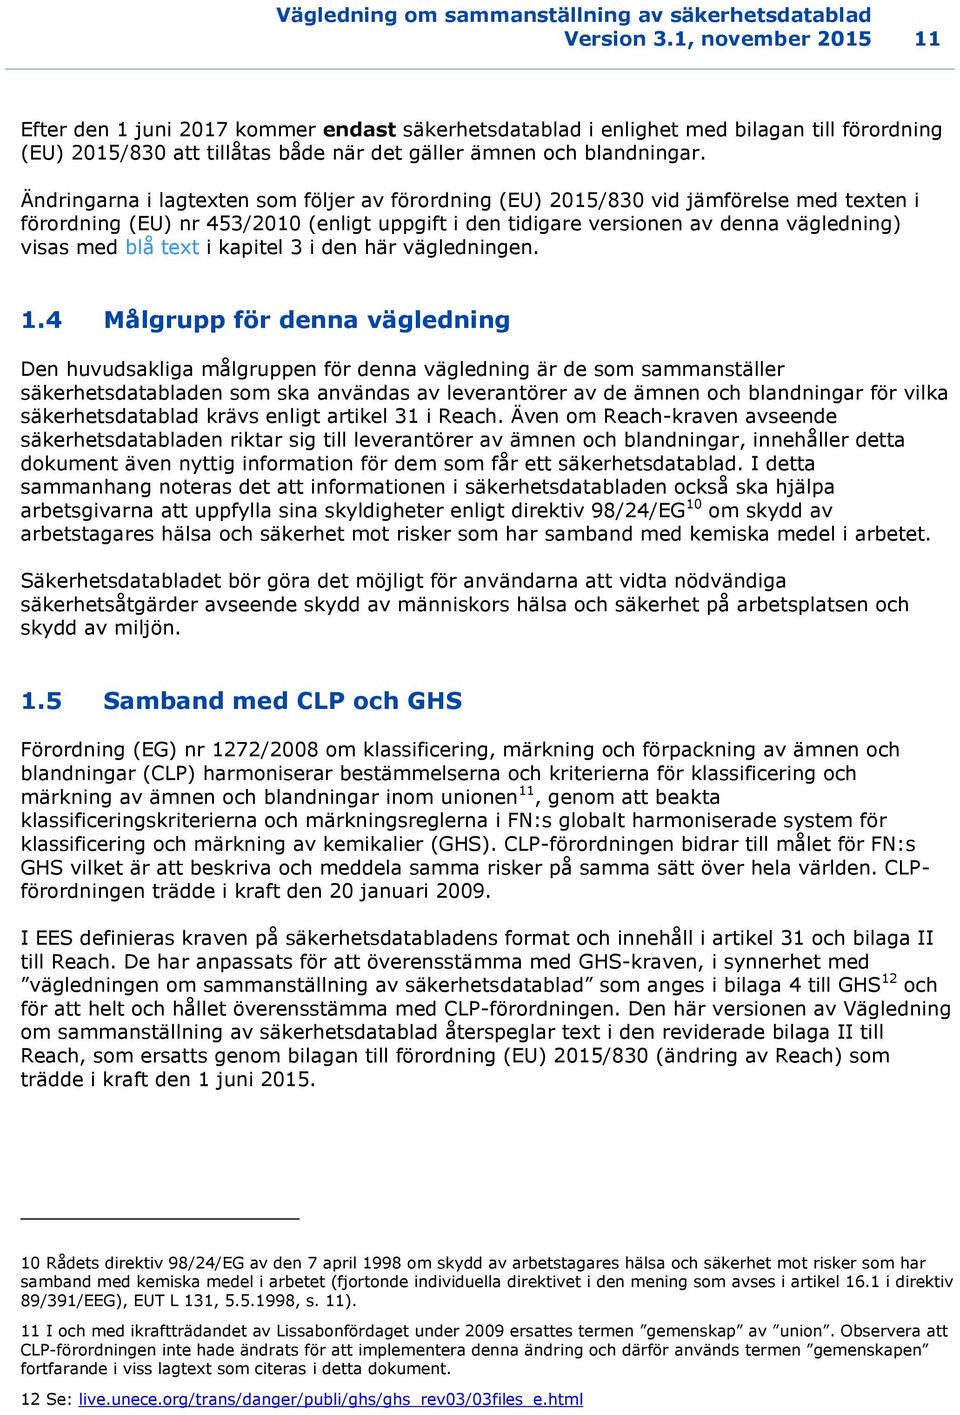 Ändringarna i lagtexten som följer av förordning (EU) 2015/830 vid jämförelse med texten i förordning (EU) nr 453/2010 (enligt uppgift i den tidigare versionen av denna vägledning) visas med blå text